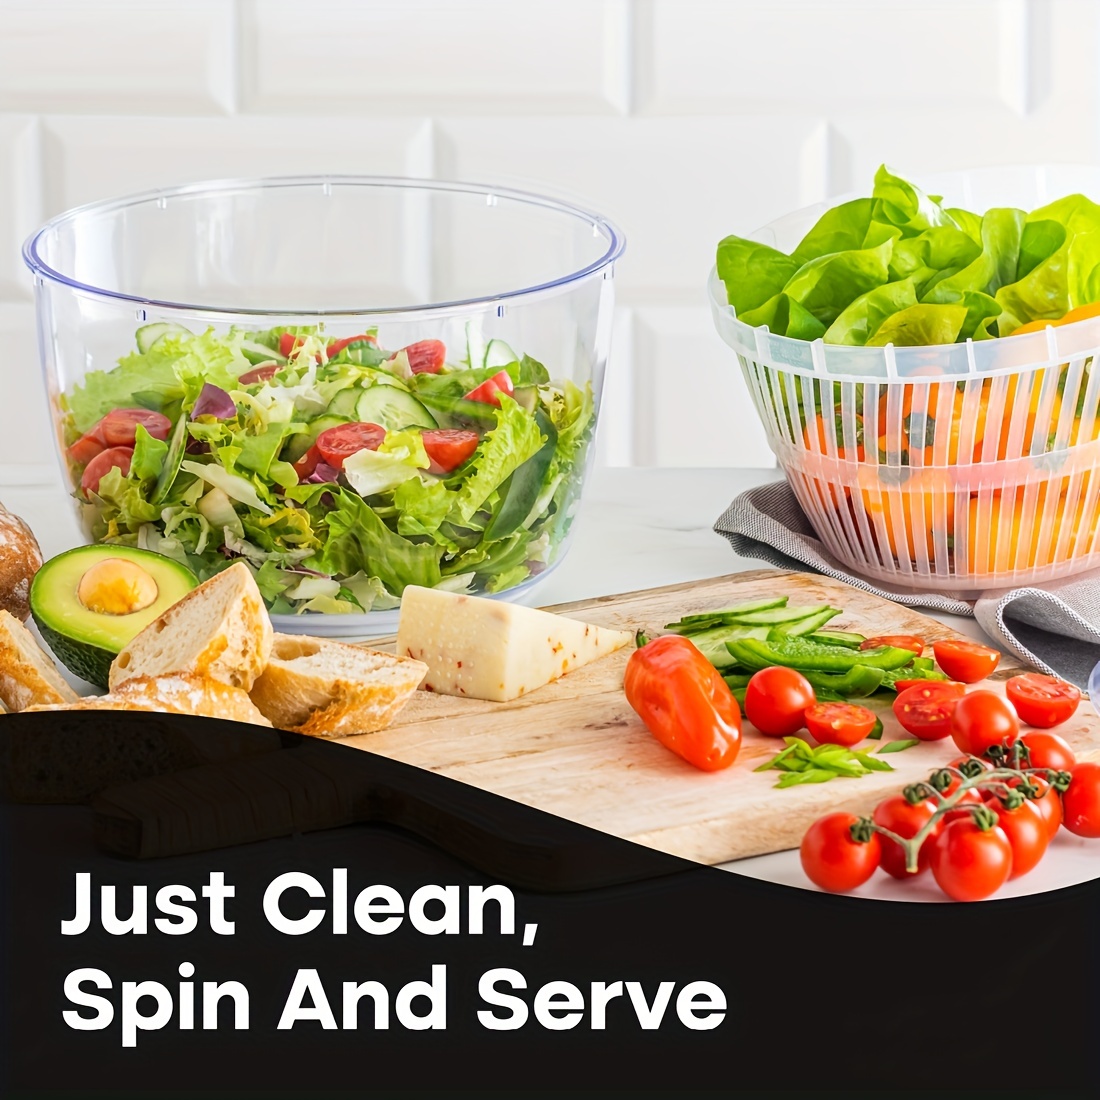 PEACNNG Large Salad Spinner and Keeper, 5L Lettuce Spinner Vegetable Washer  Dryer with Large Salad Bowl and Plastic Colander, Fruit Veggie Wash & Salad  Making 